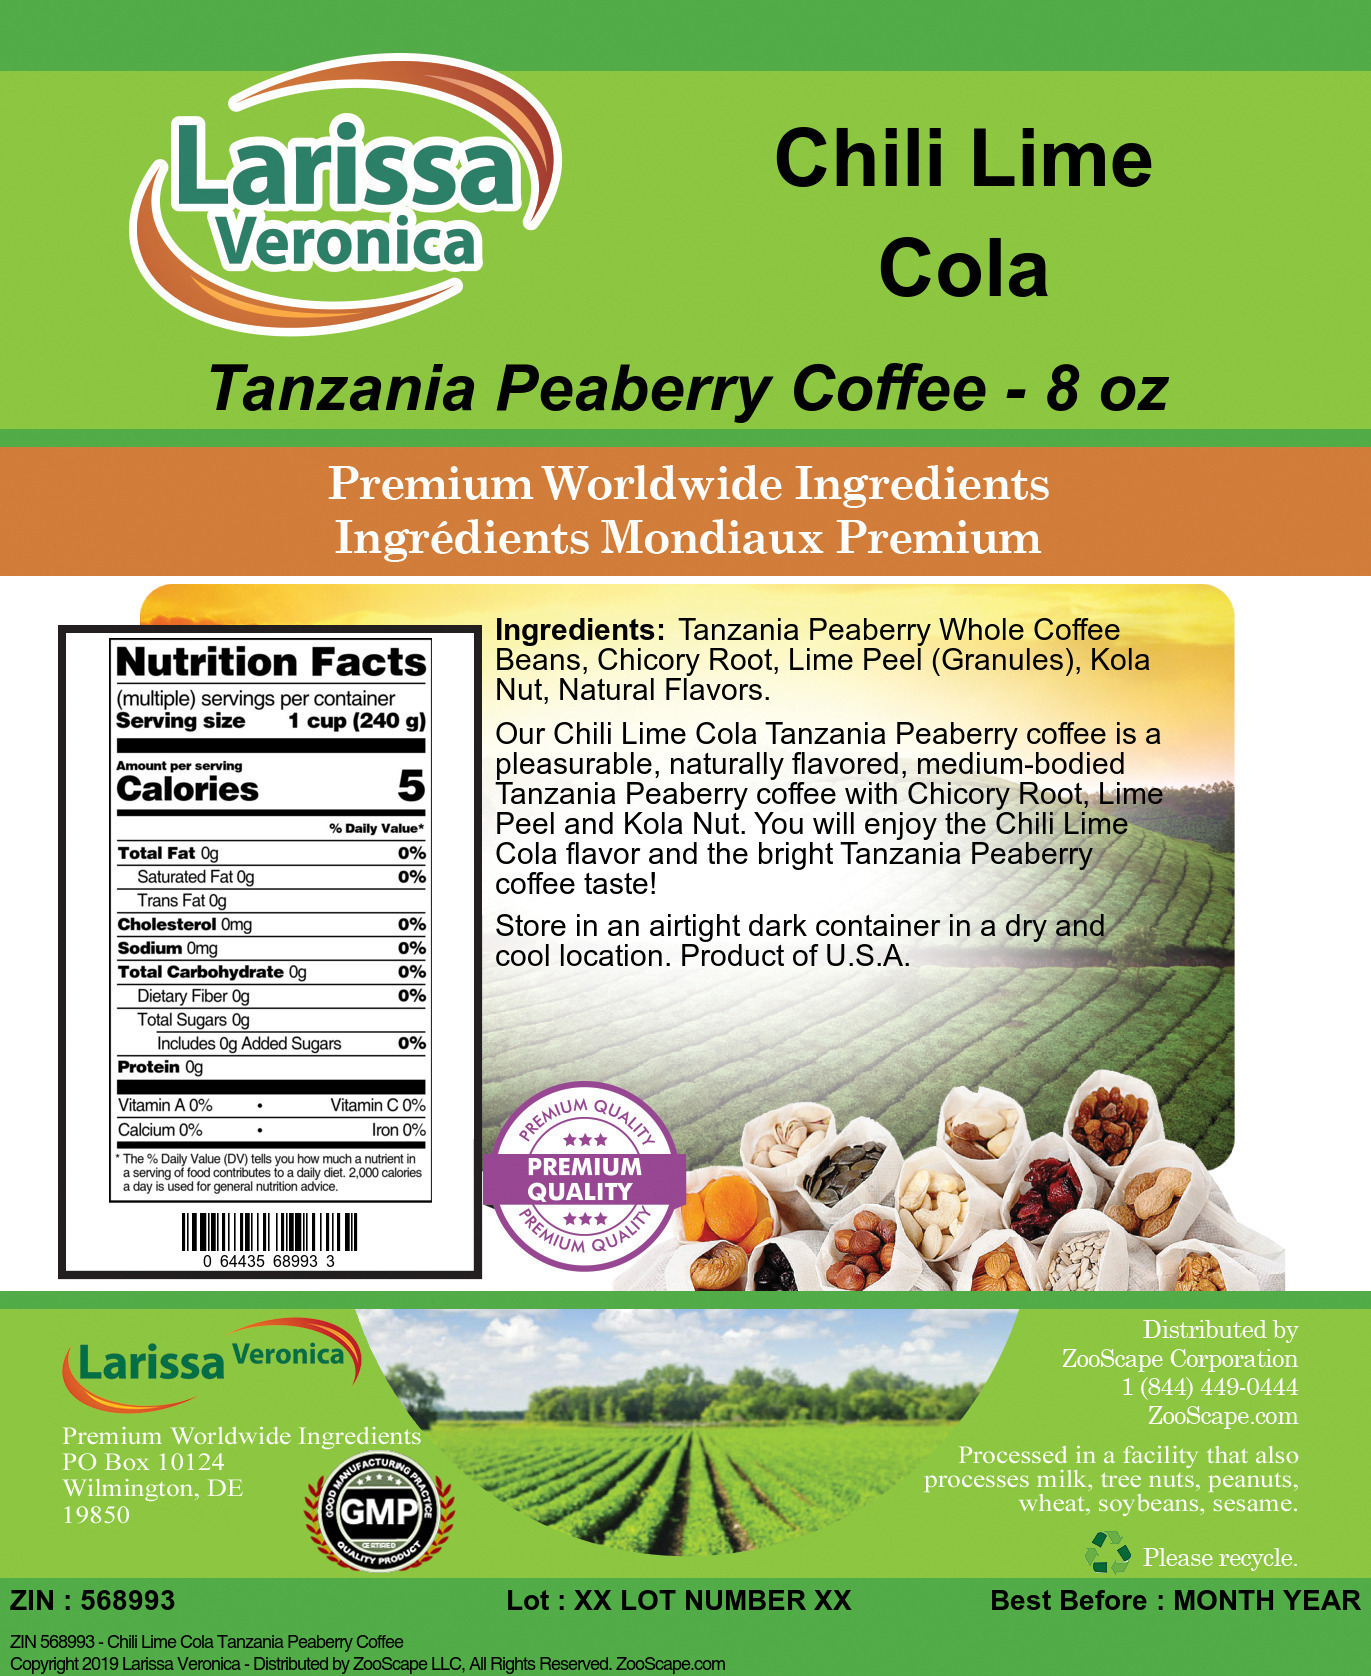 Chili Lime Cola Tanzania Peaberry Coffee - Label